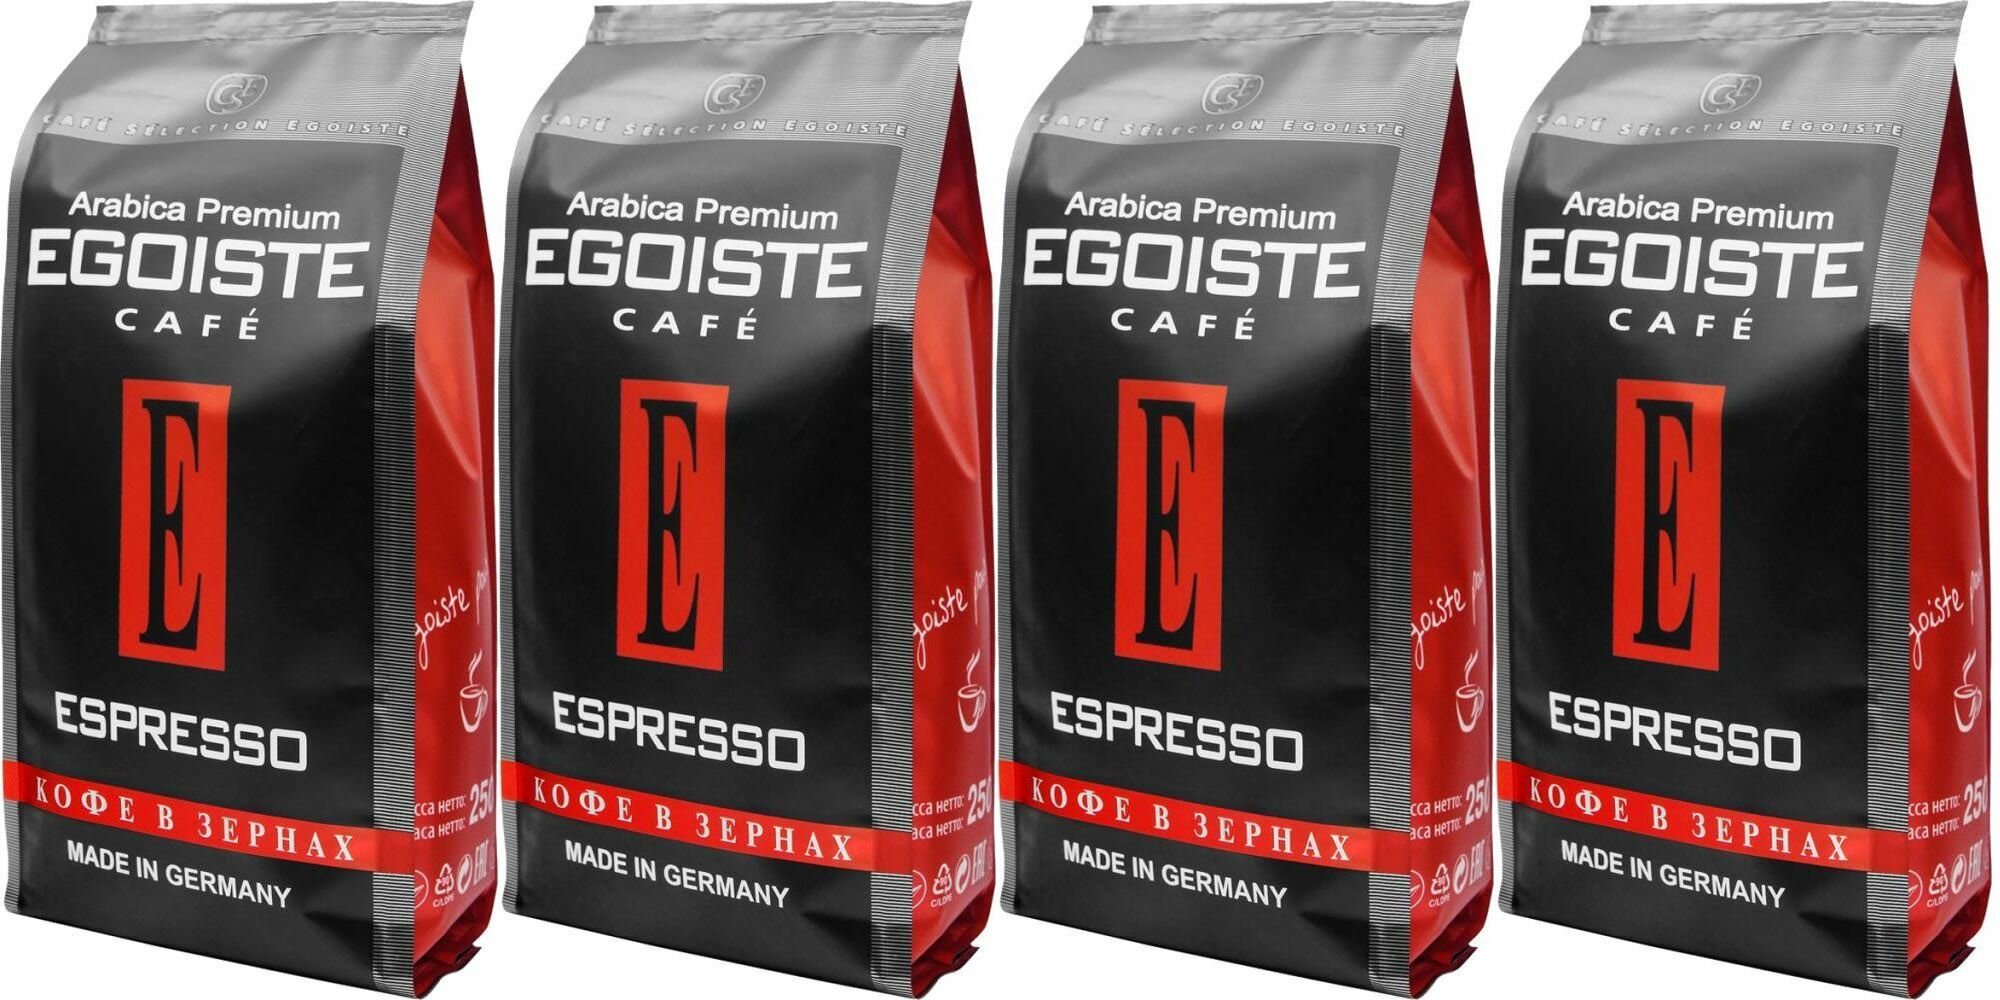 Кофе в зернах Egoiste Espresso, 250 г (Эгоист) х 4 шт